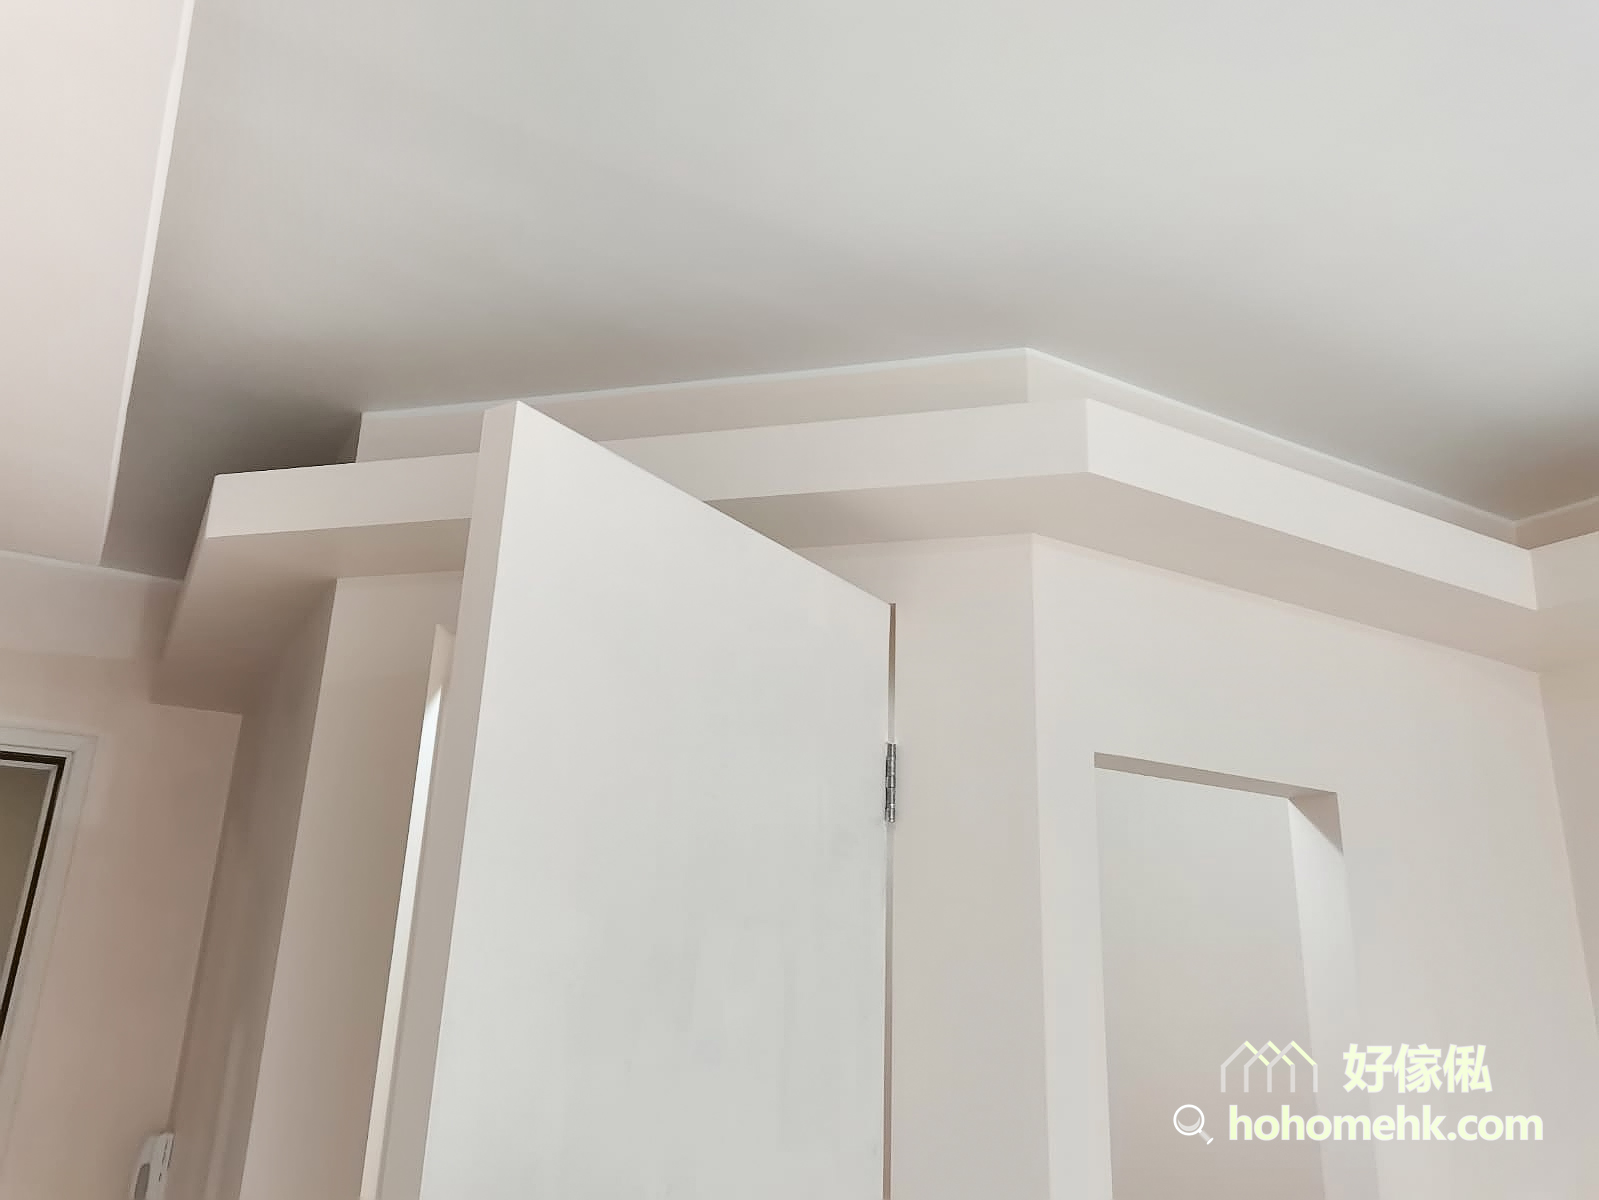 木板除了可以用來做家具和隔間外，還可以建造天花板燈槽。圍著全屋空間訂做一整列的燈槽，柔和的光線讓空間充滿溫馨感與造型感